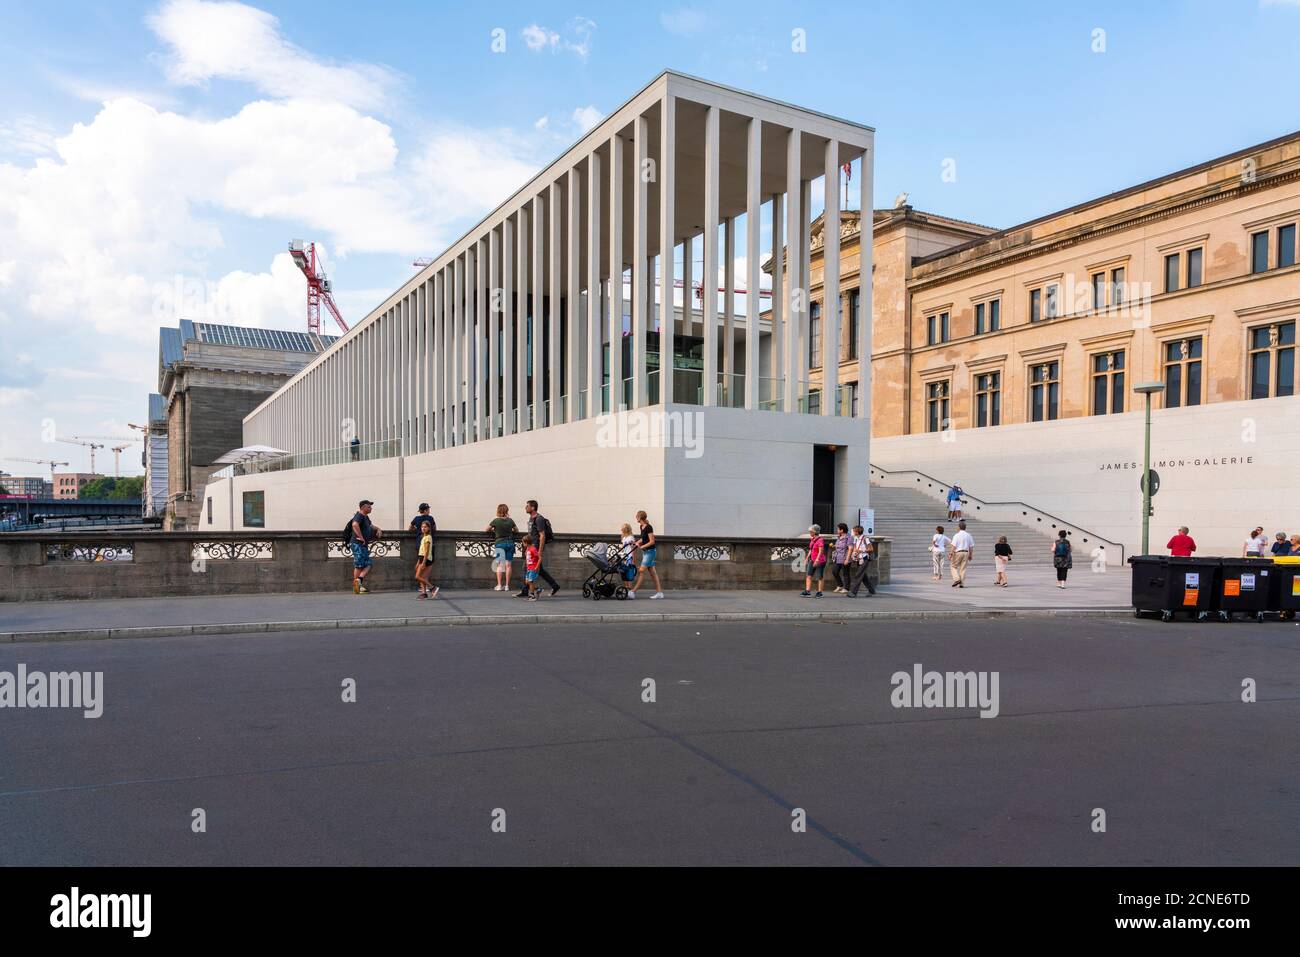 Galerie James Simon et Musée Pergamon dans le Museumsinsel, site classé au patrimoine mondial de l'UNESCO, Berlin, Allemagne, Europe Banque D'Images